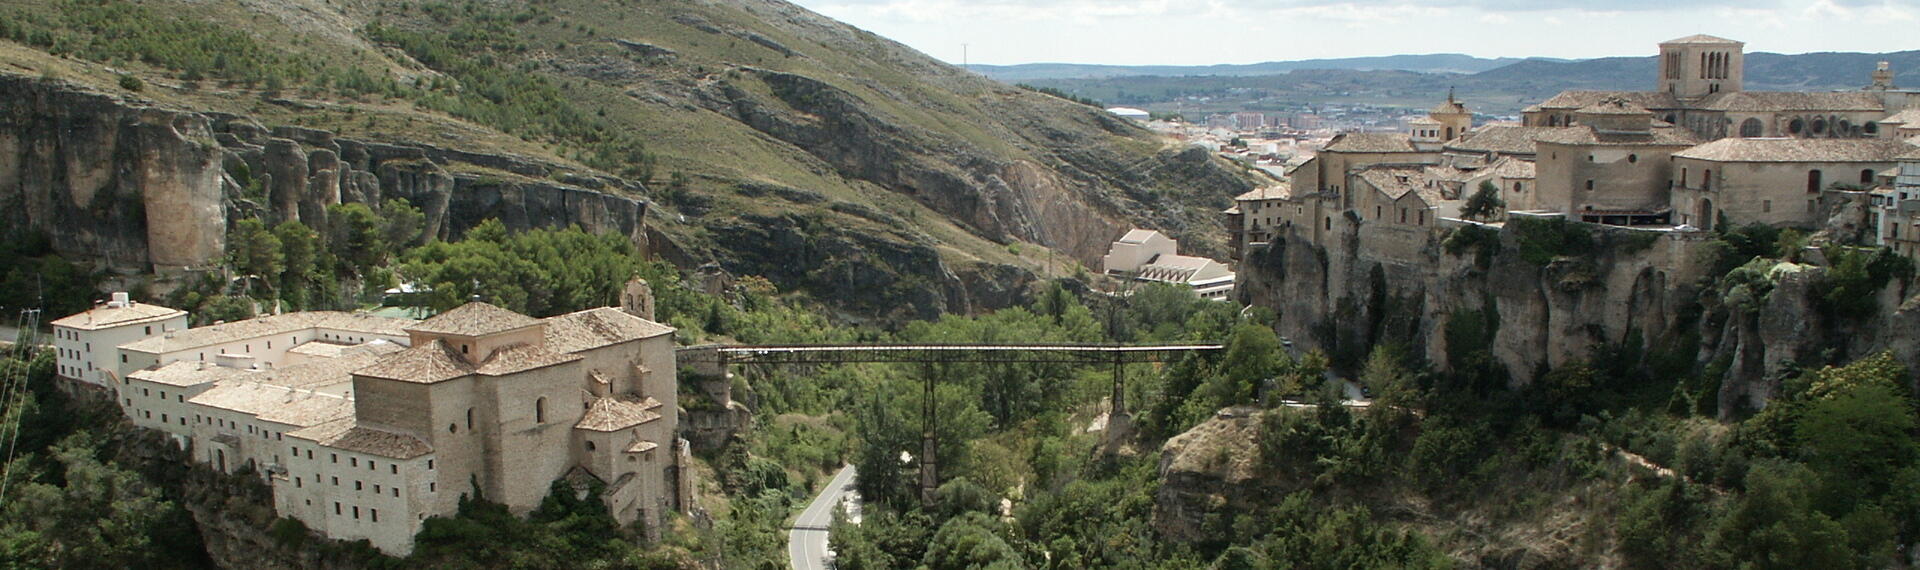 Cuenca, Espagne